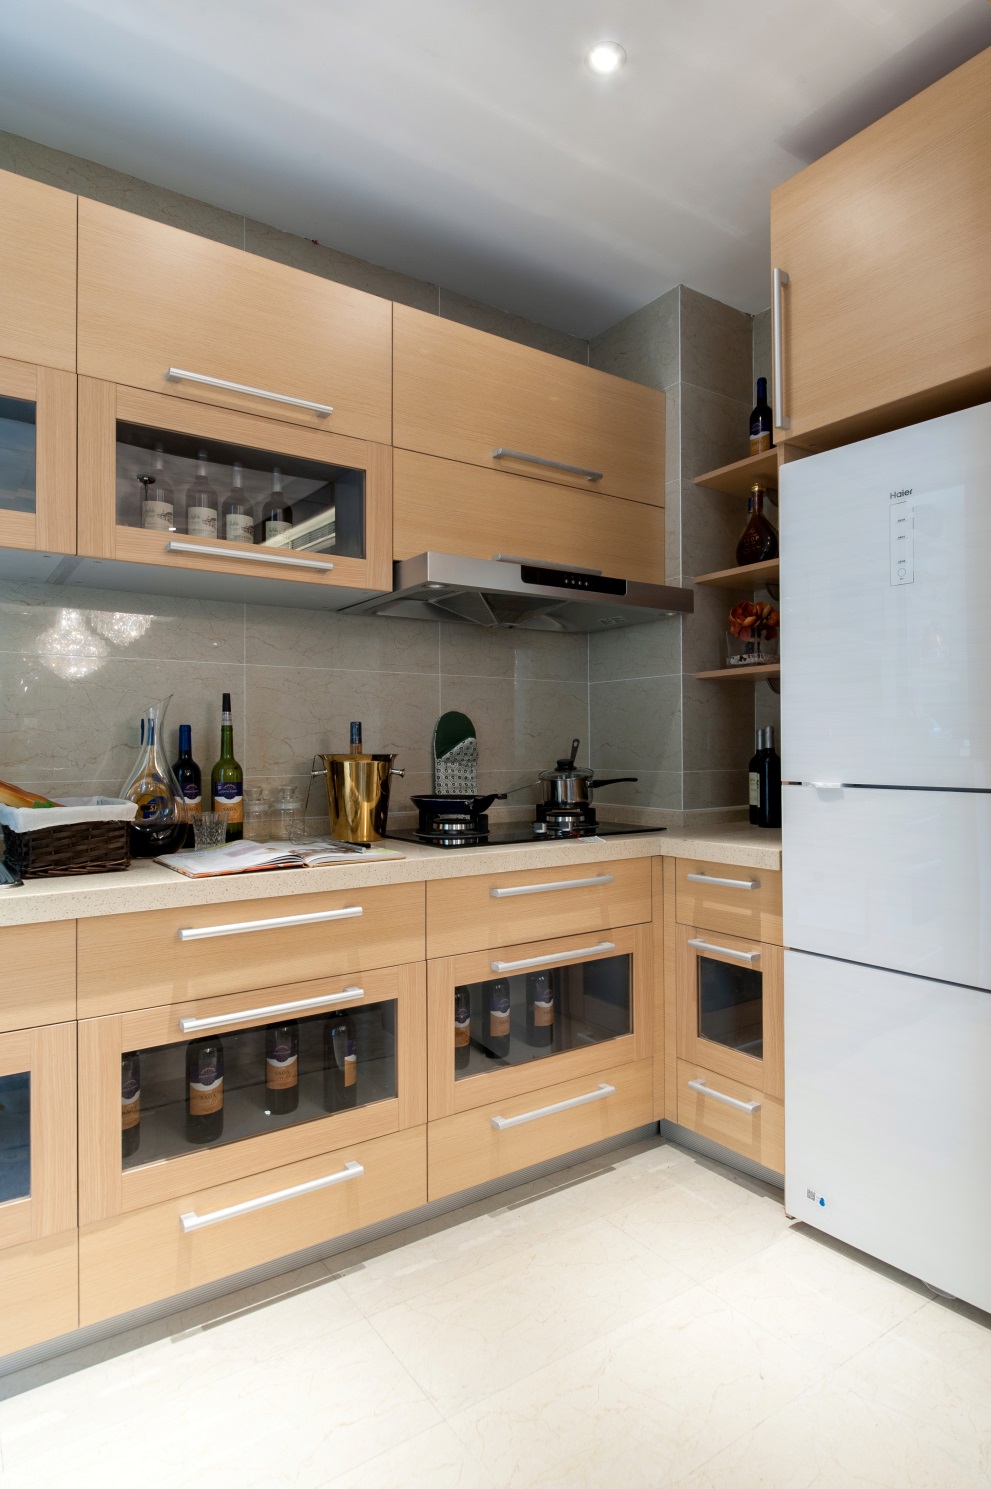 浅木色橱柜贯穿整个厨房设计，看似简单的烹饪空间，细节处彰显精致。